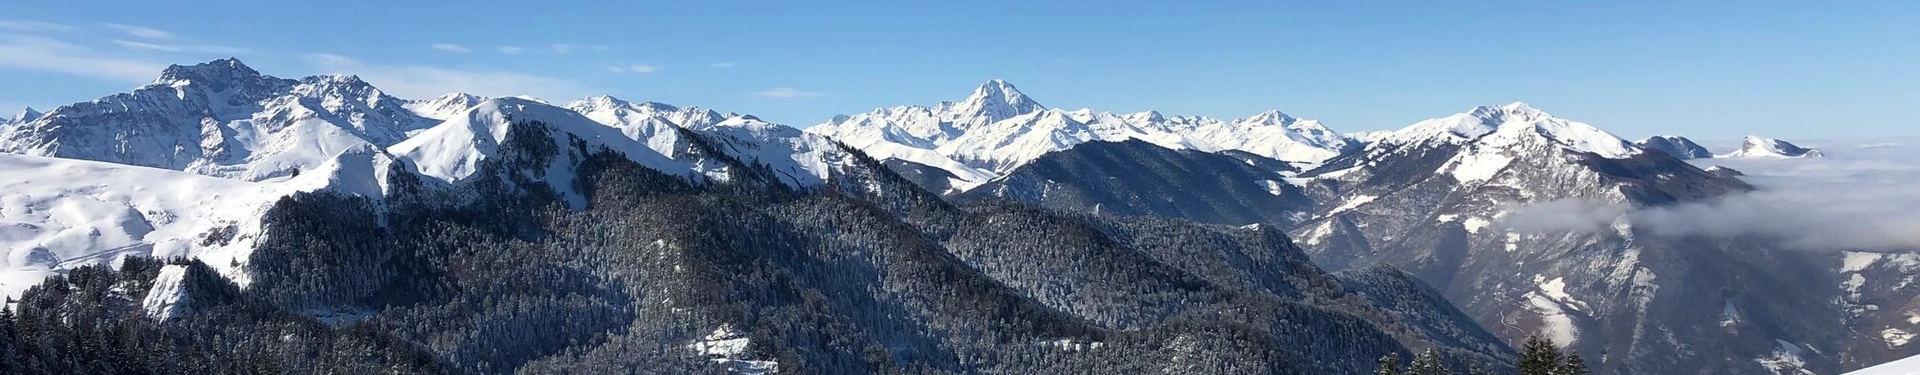 Formulaire de réservation - Pyrénées aventure : séjour hiver multiactivité en famille | Nature Occitane